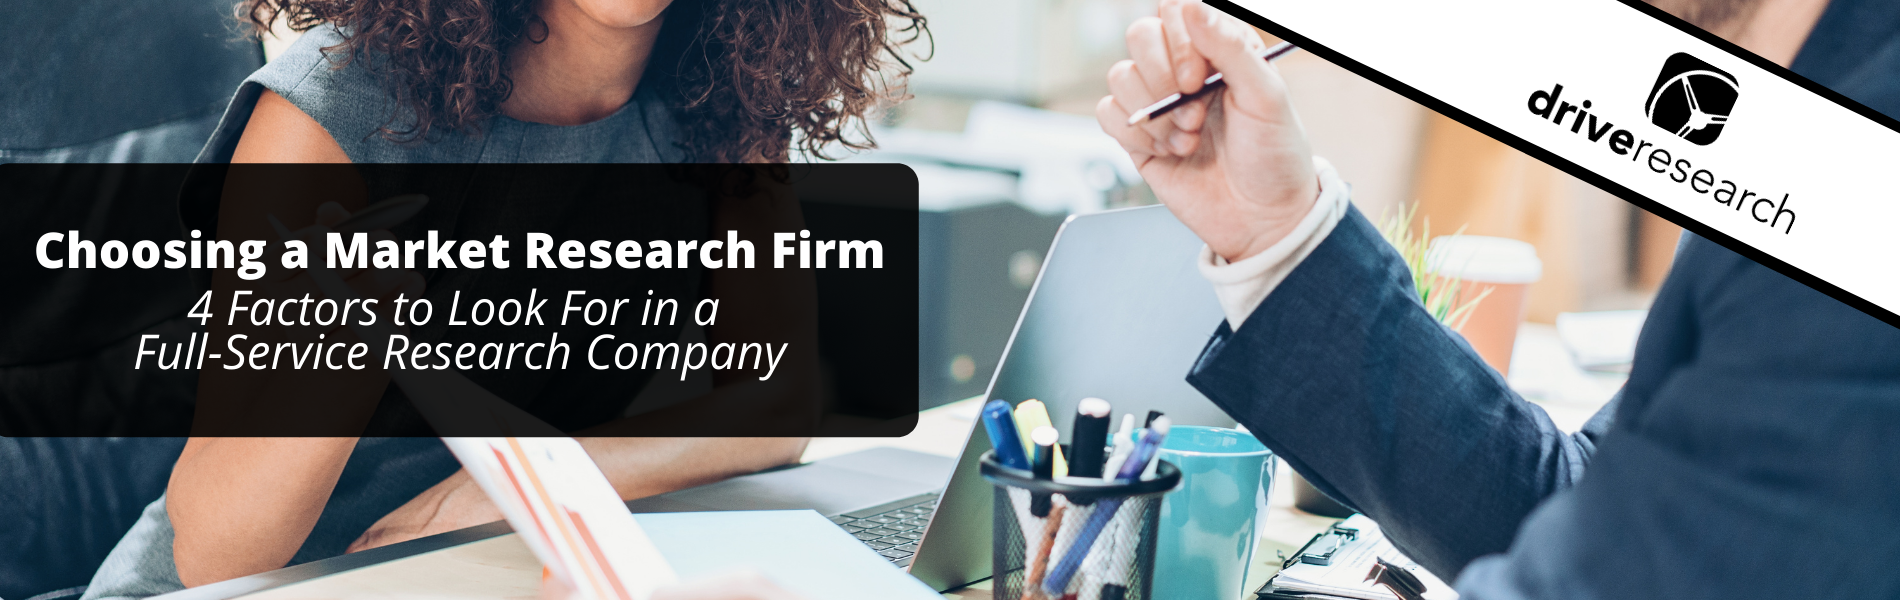 Choosing a Market Research Firm